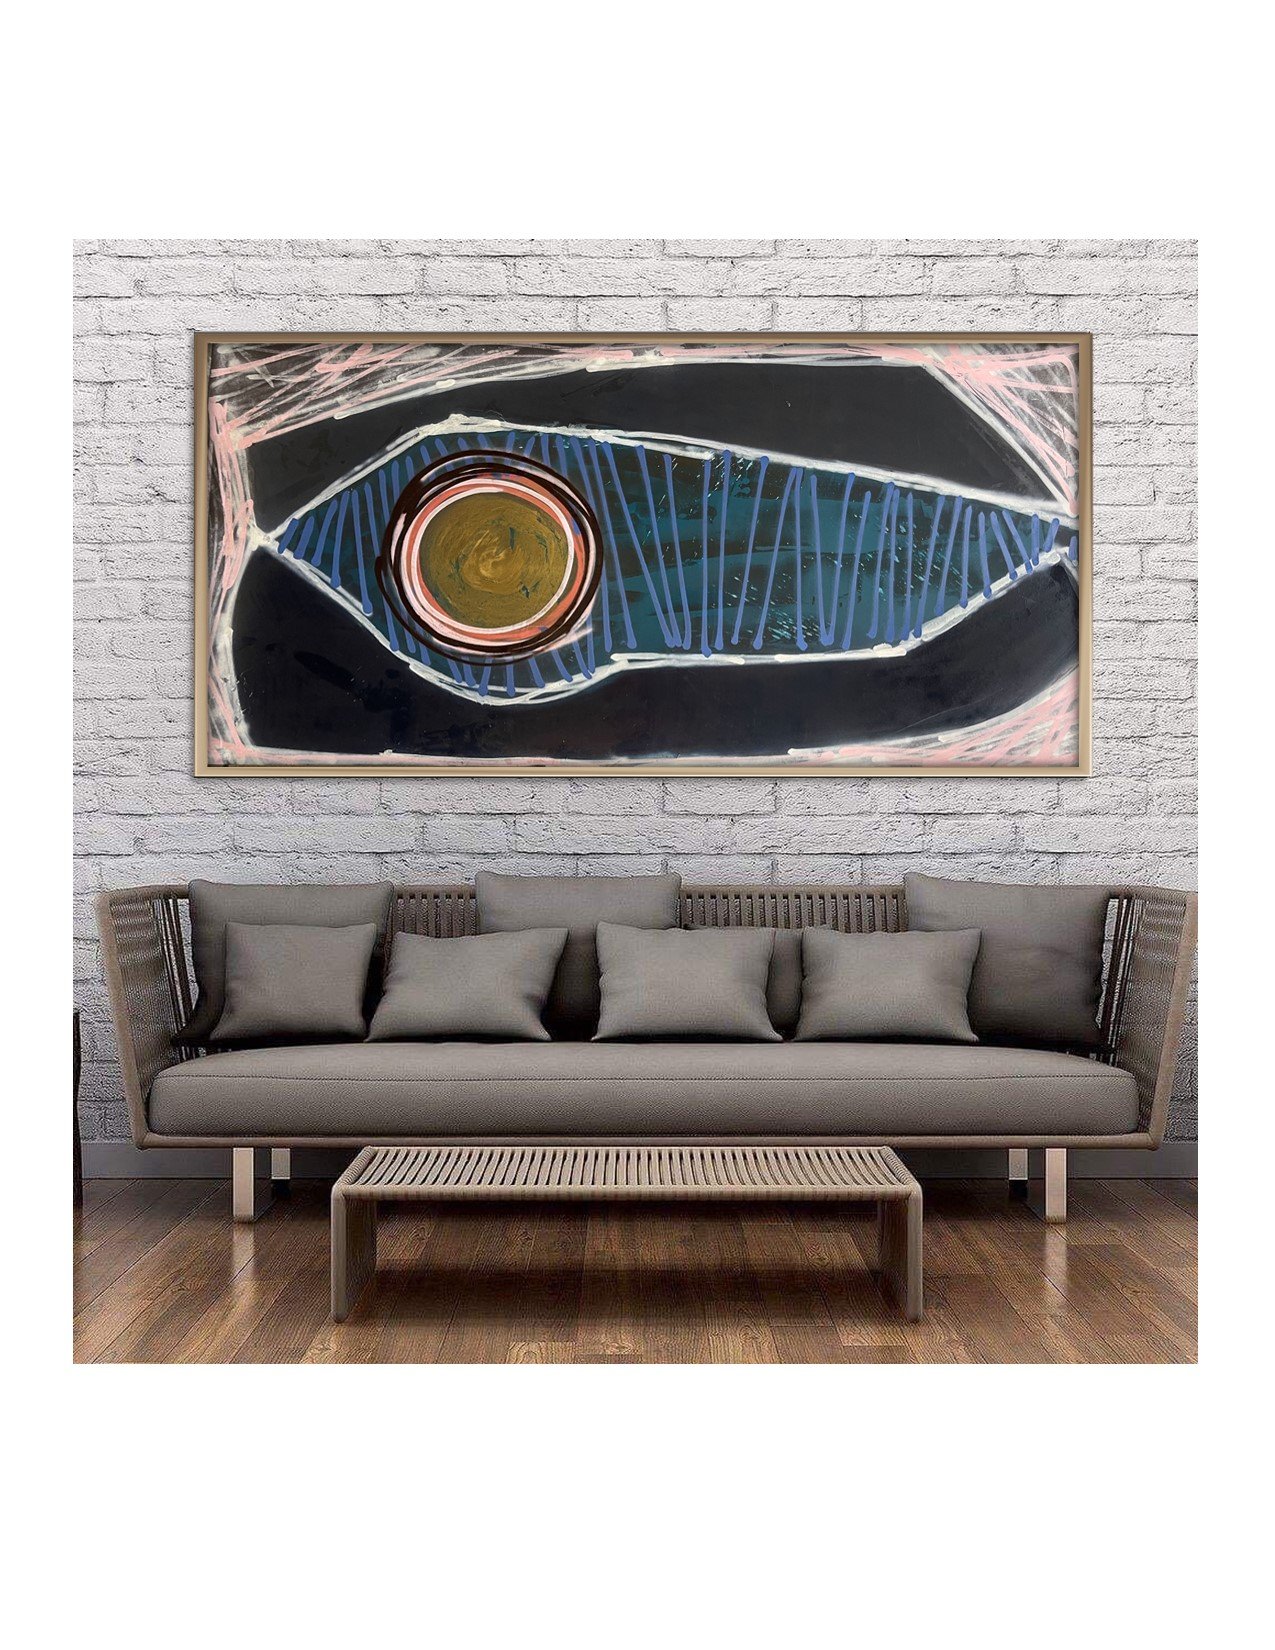 Template 26 Wood Panel Horizontal Over Rattan Gray Sofa In Situ.jpg